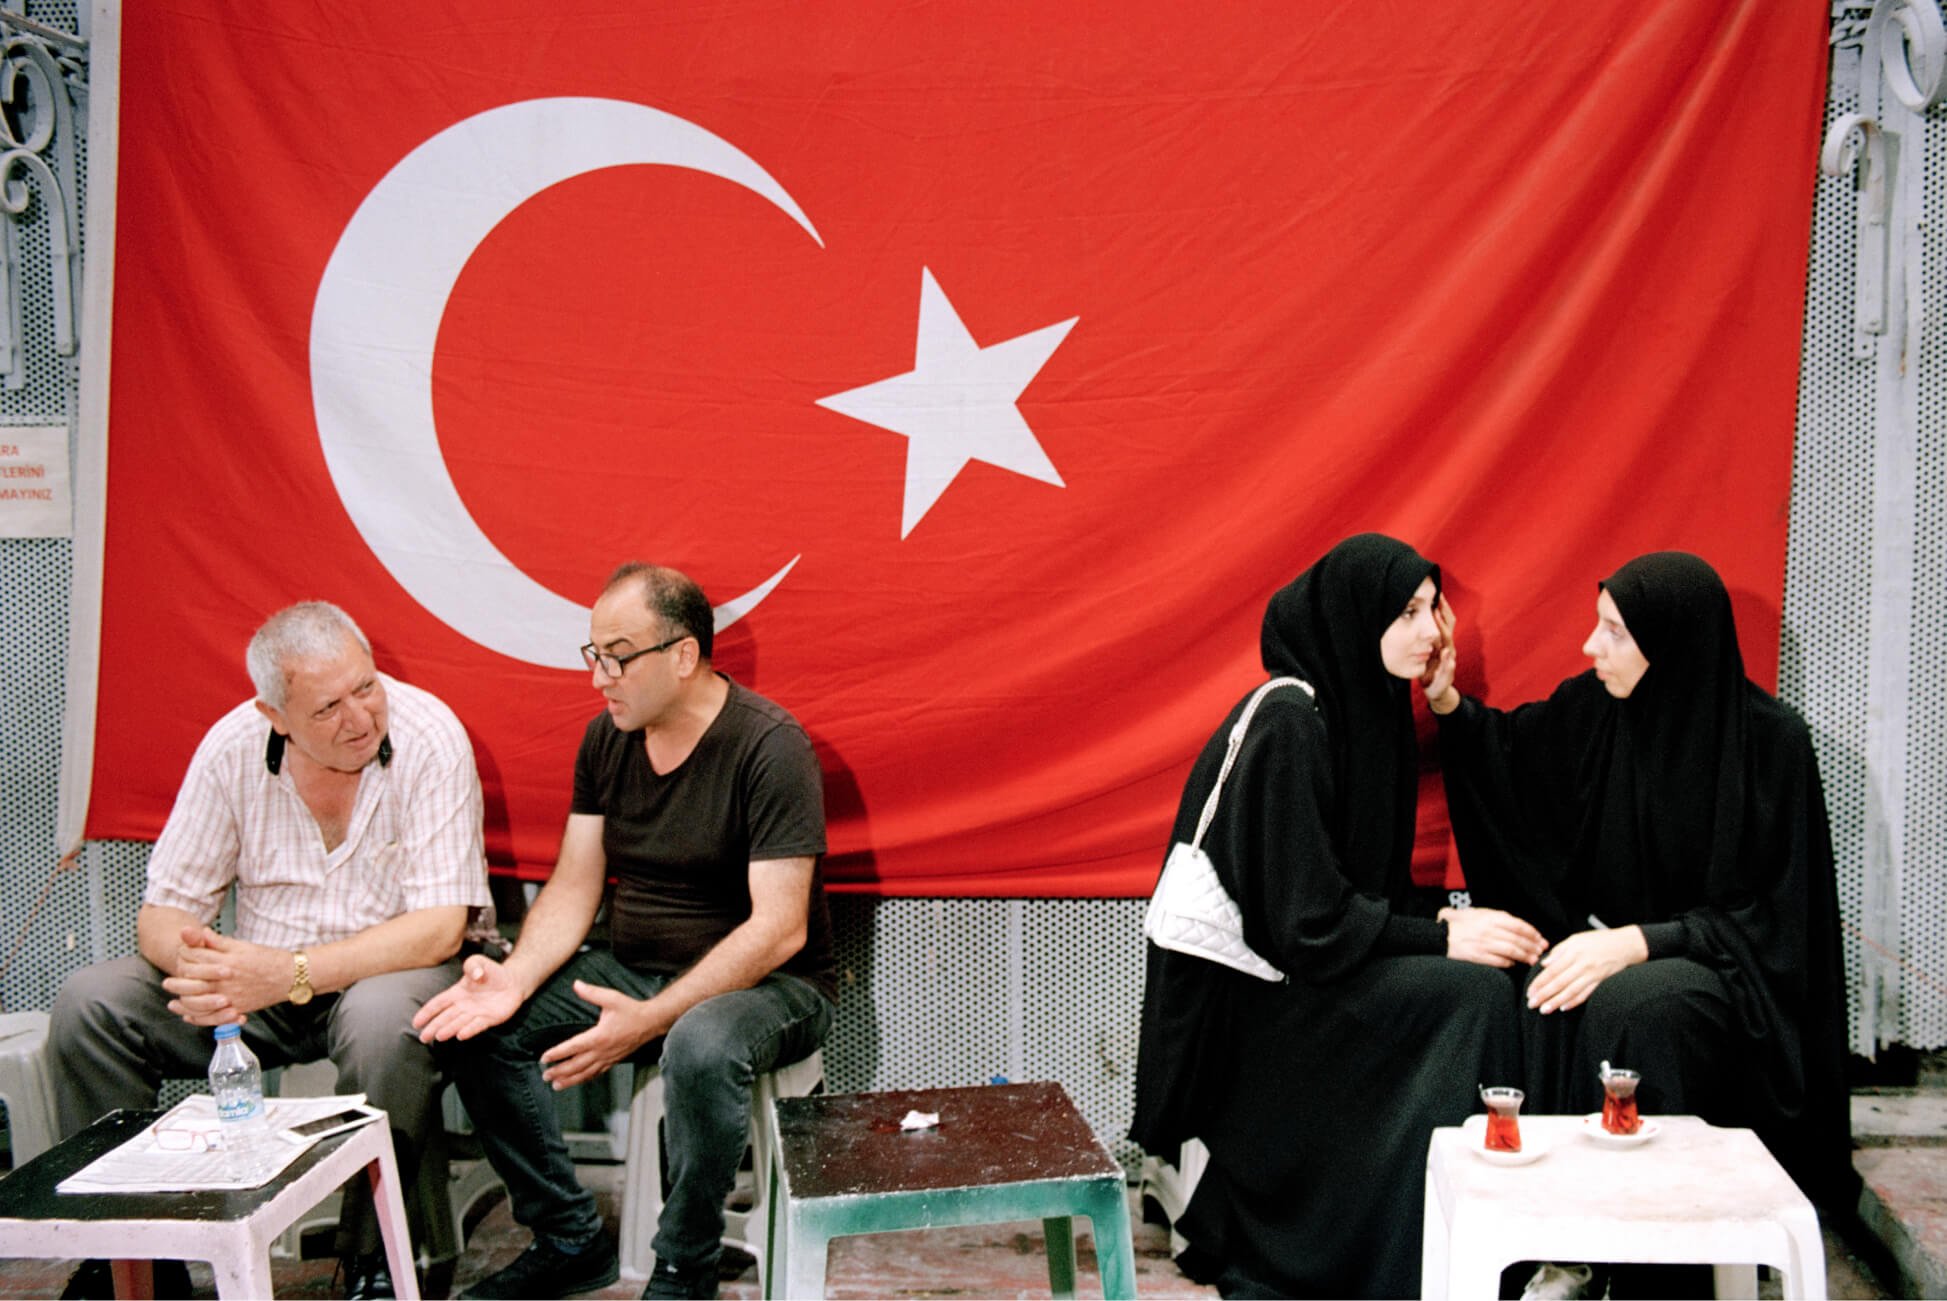 Dois homens e duas mulheres de véu sentados separadamente em uma casa de chá com uma bandeira turca ao fundo.